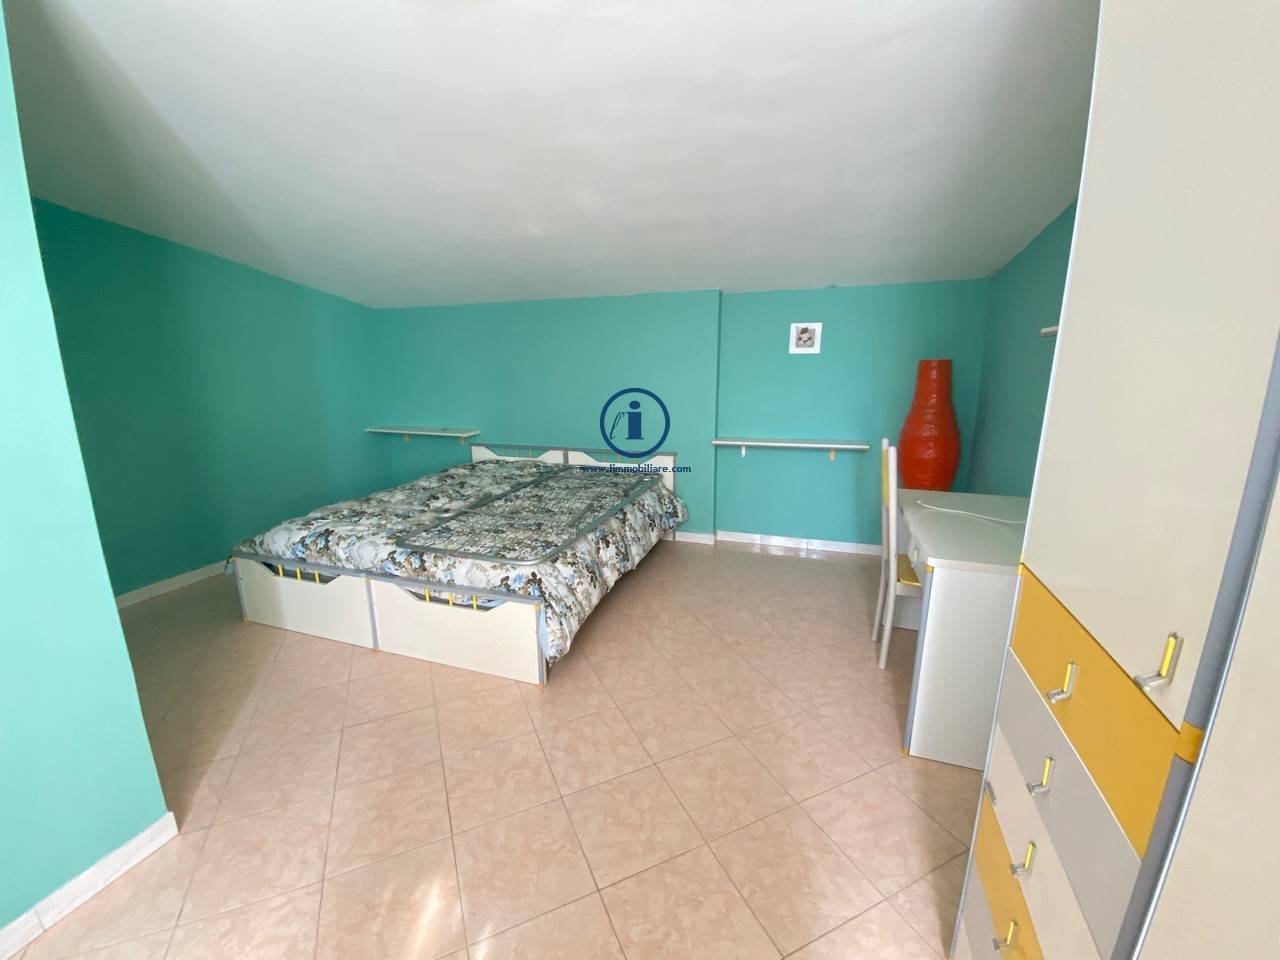 Appartamento in vendita a Santa Maria Capua Vetere, 3 locali, prezzo € 55.000 | PortaleAgenzieImmobiliari.it